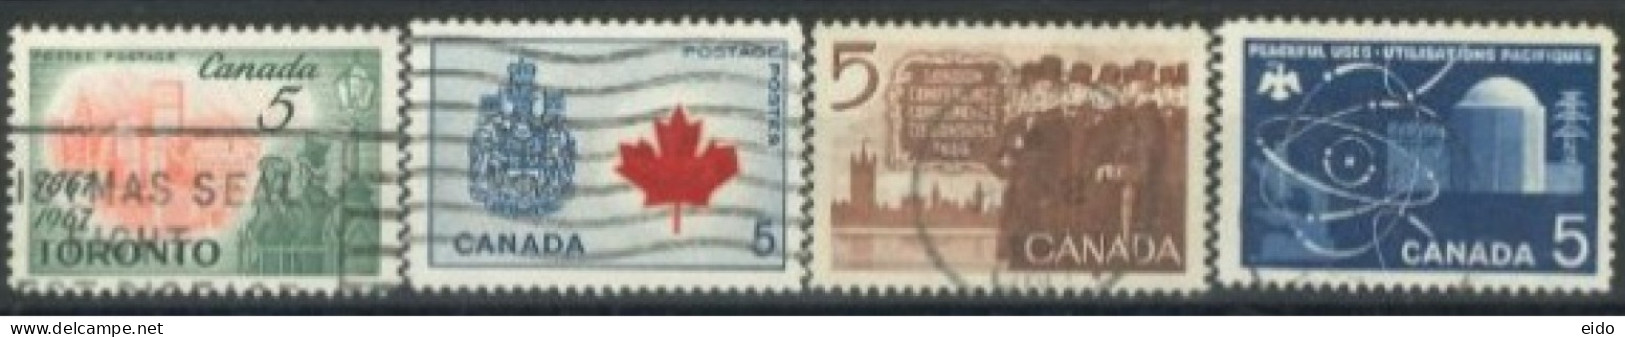 CANADA - 1964/67, STAMPS SET OF 4, USED. - Gebruikt